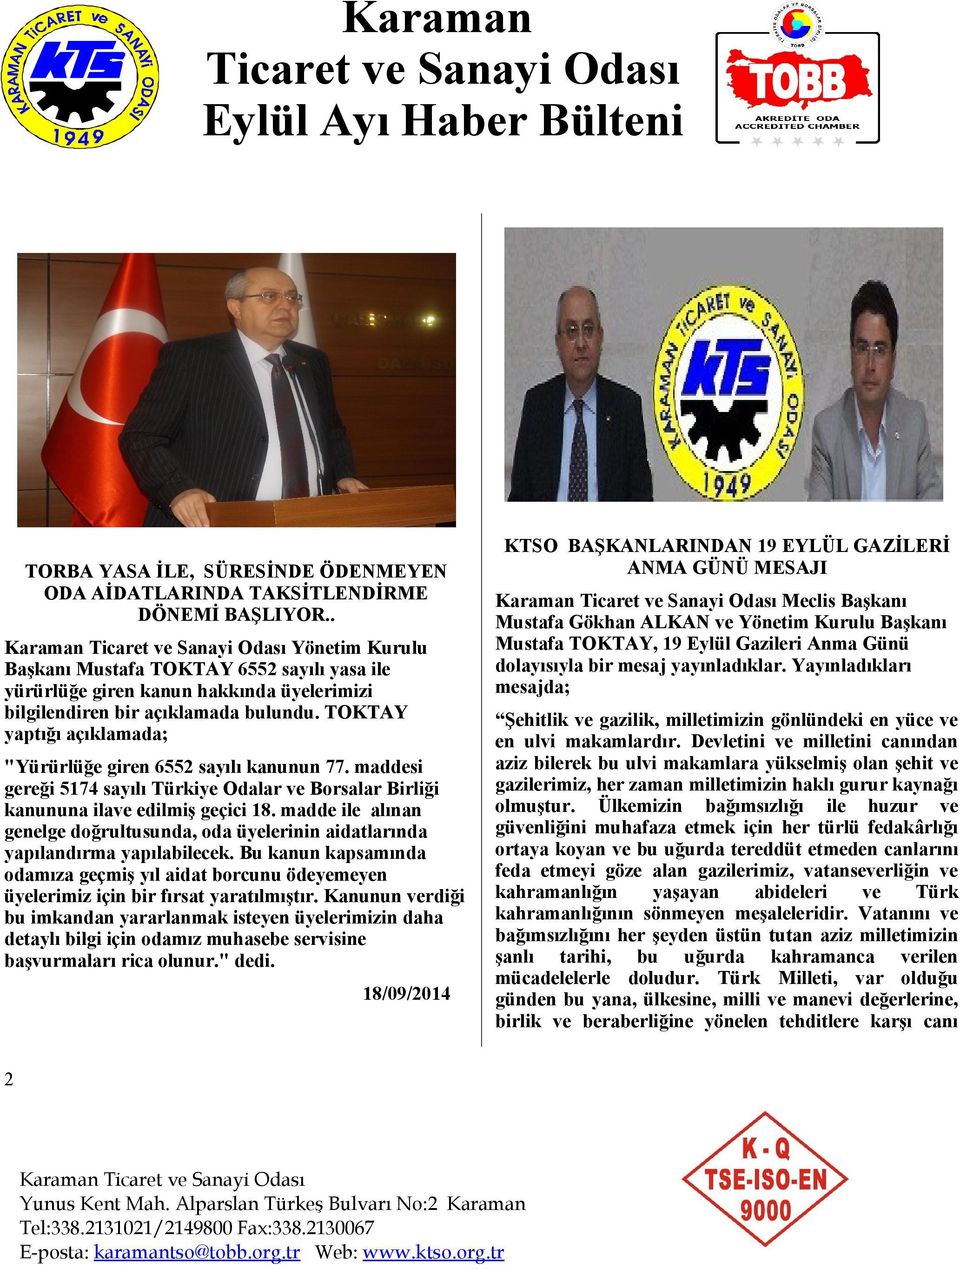 TOKTAY yaptığı açıklamada; "Yürürlüğe giren 6552 sayılı kanunun 77. maddesi gereği 5174 sayılı Türkiye Odalar ve Borsalar Birliği kanununa ilave edilmiş geçici 18.